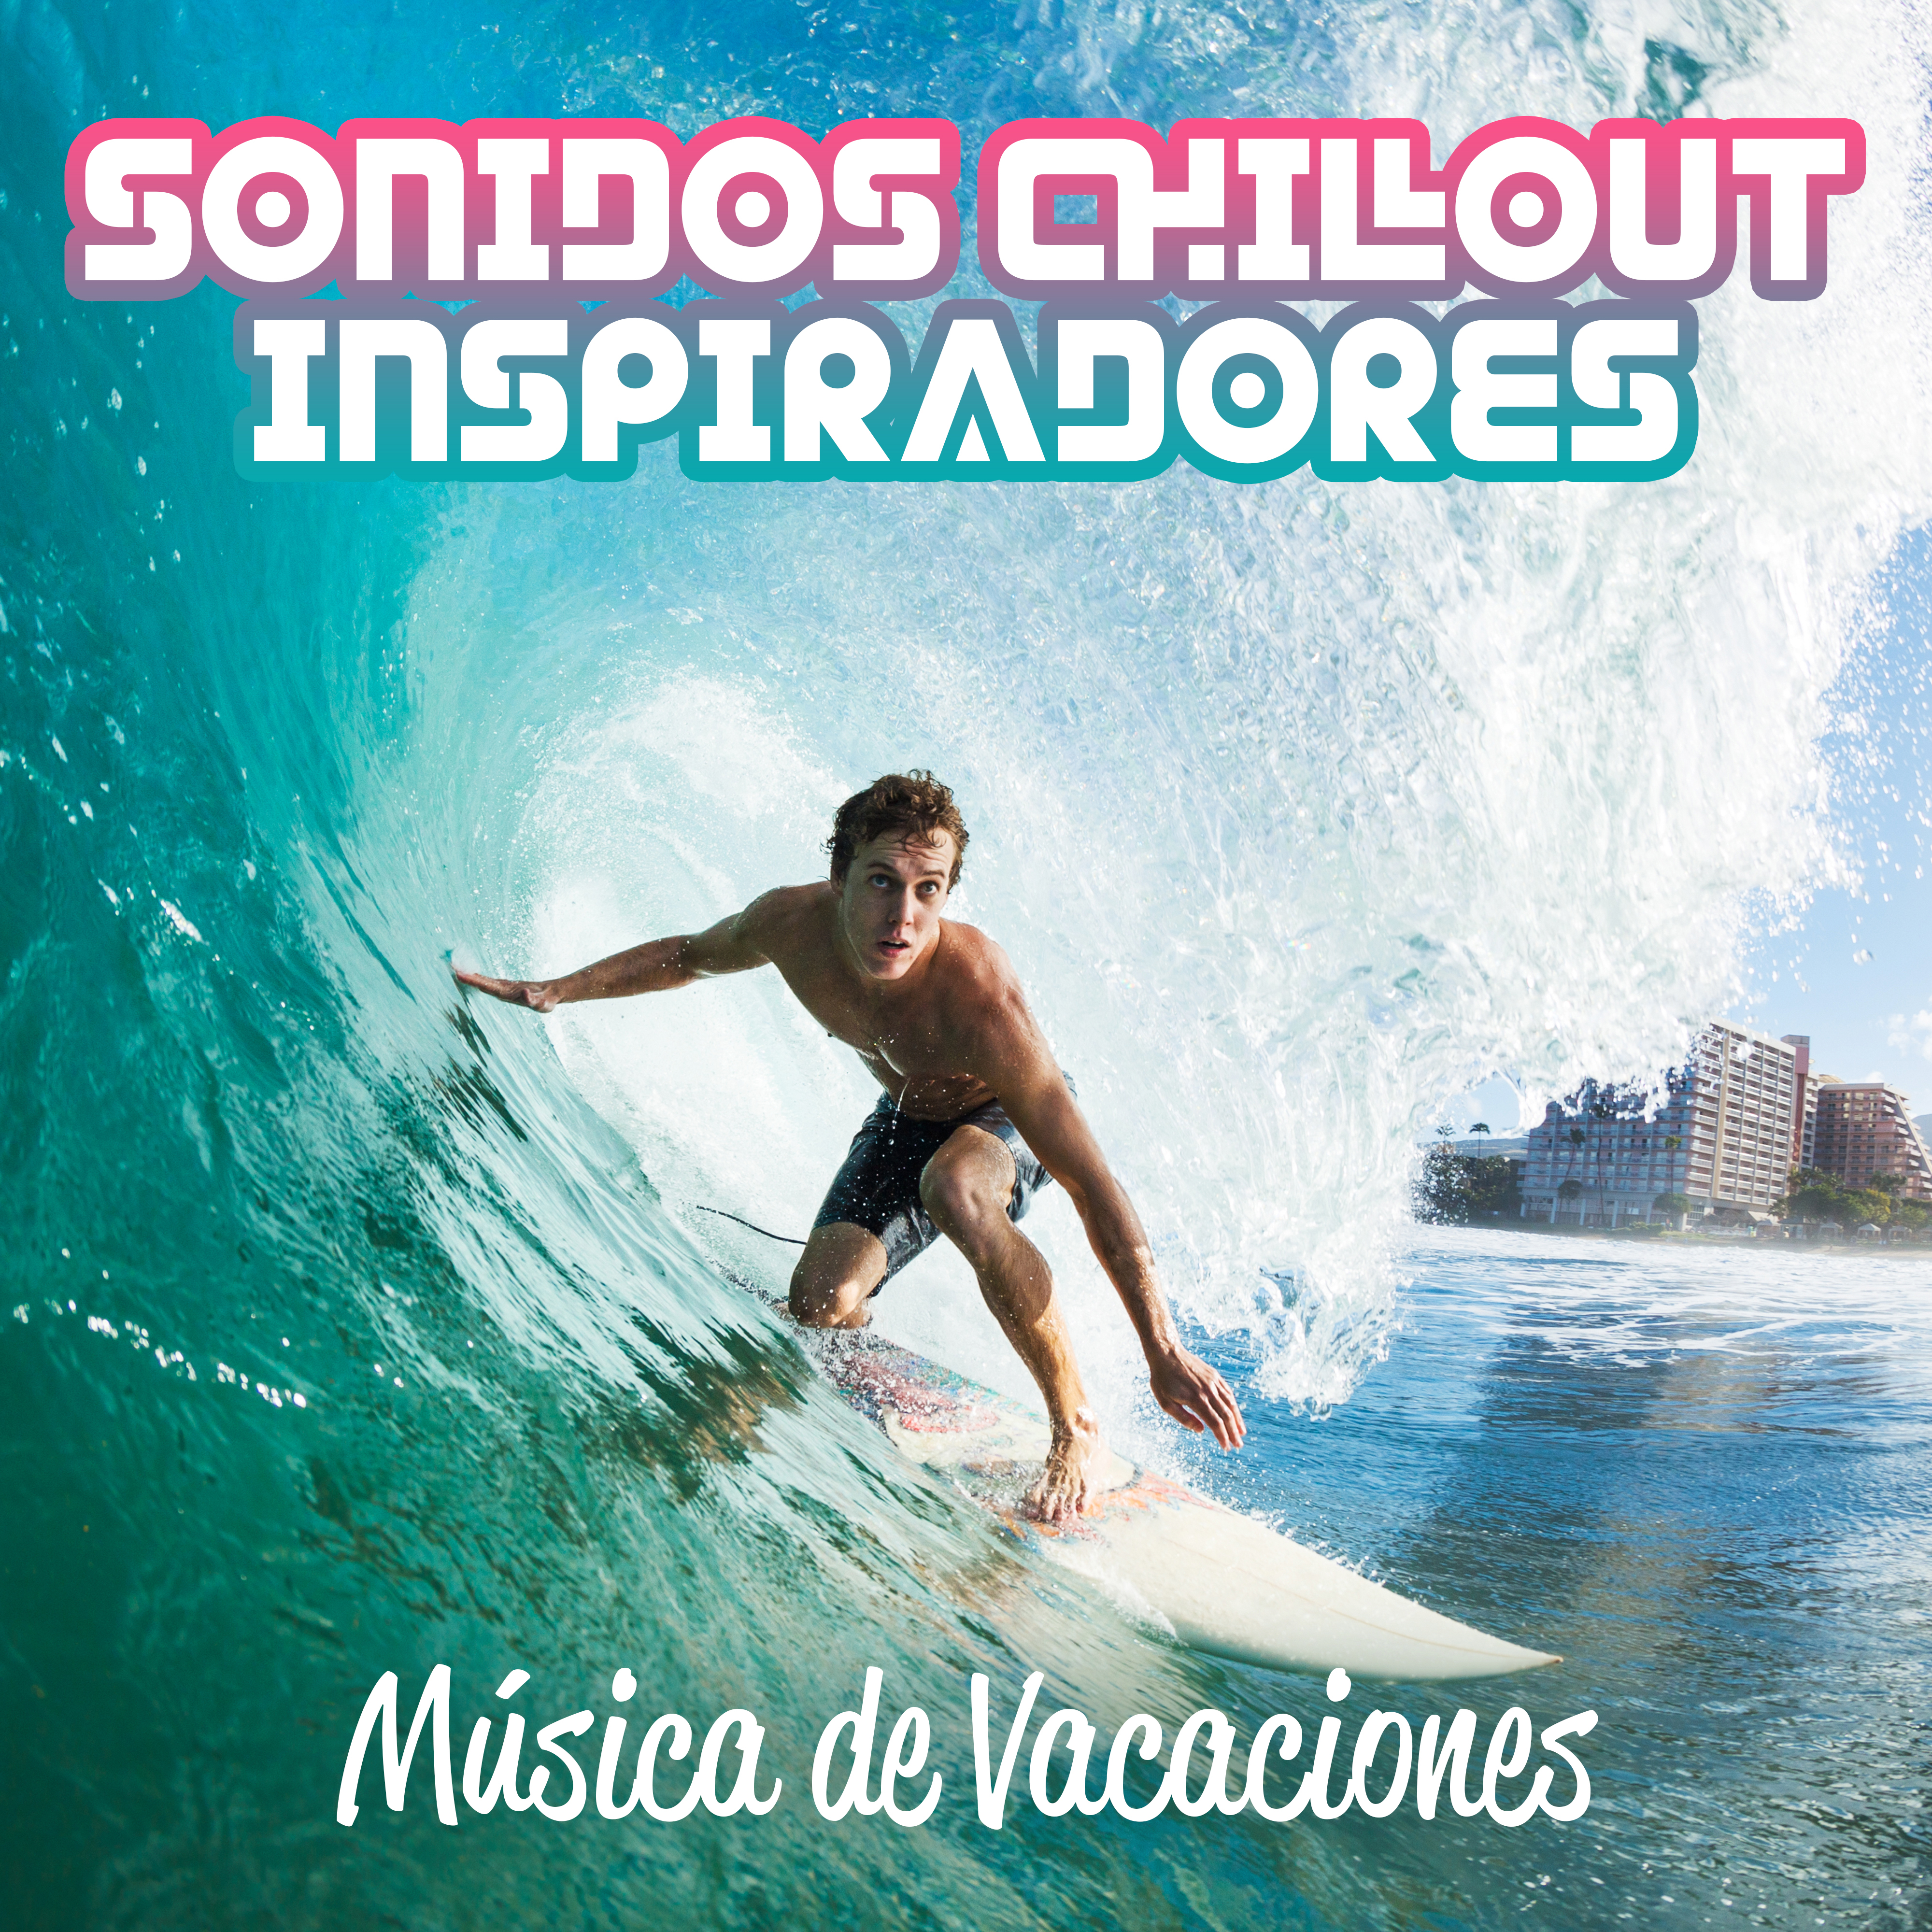 Sonidos Chillout Inspiradores - Música de Vacaciones